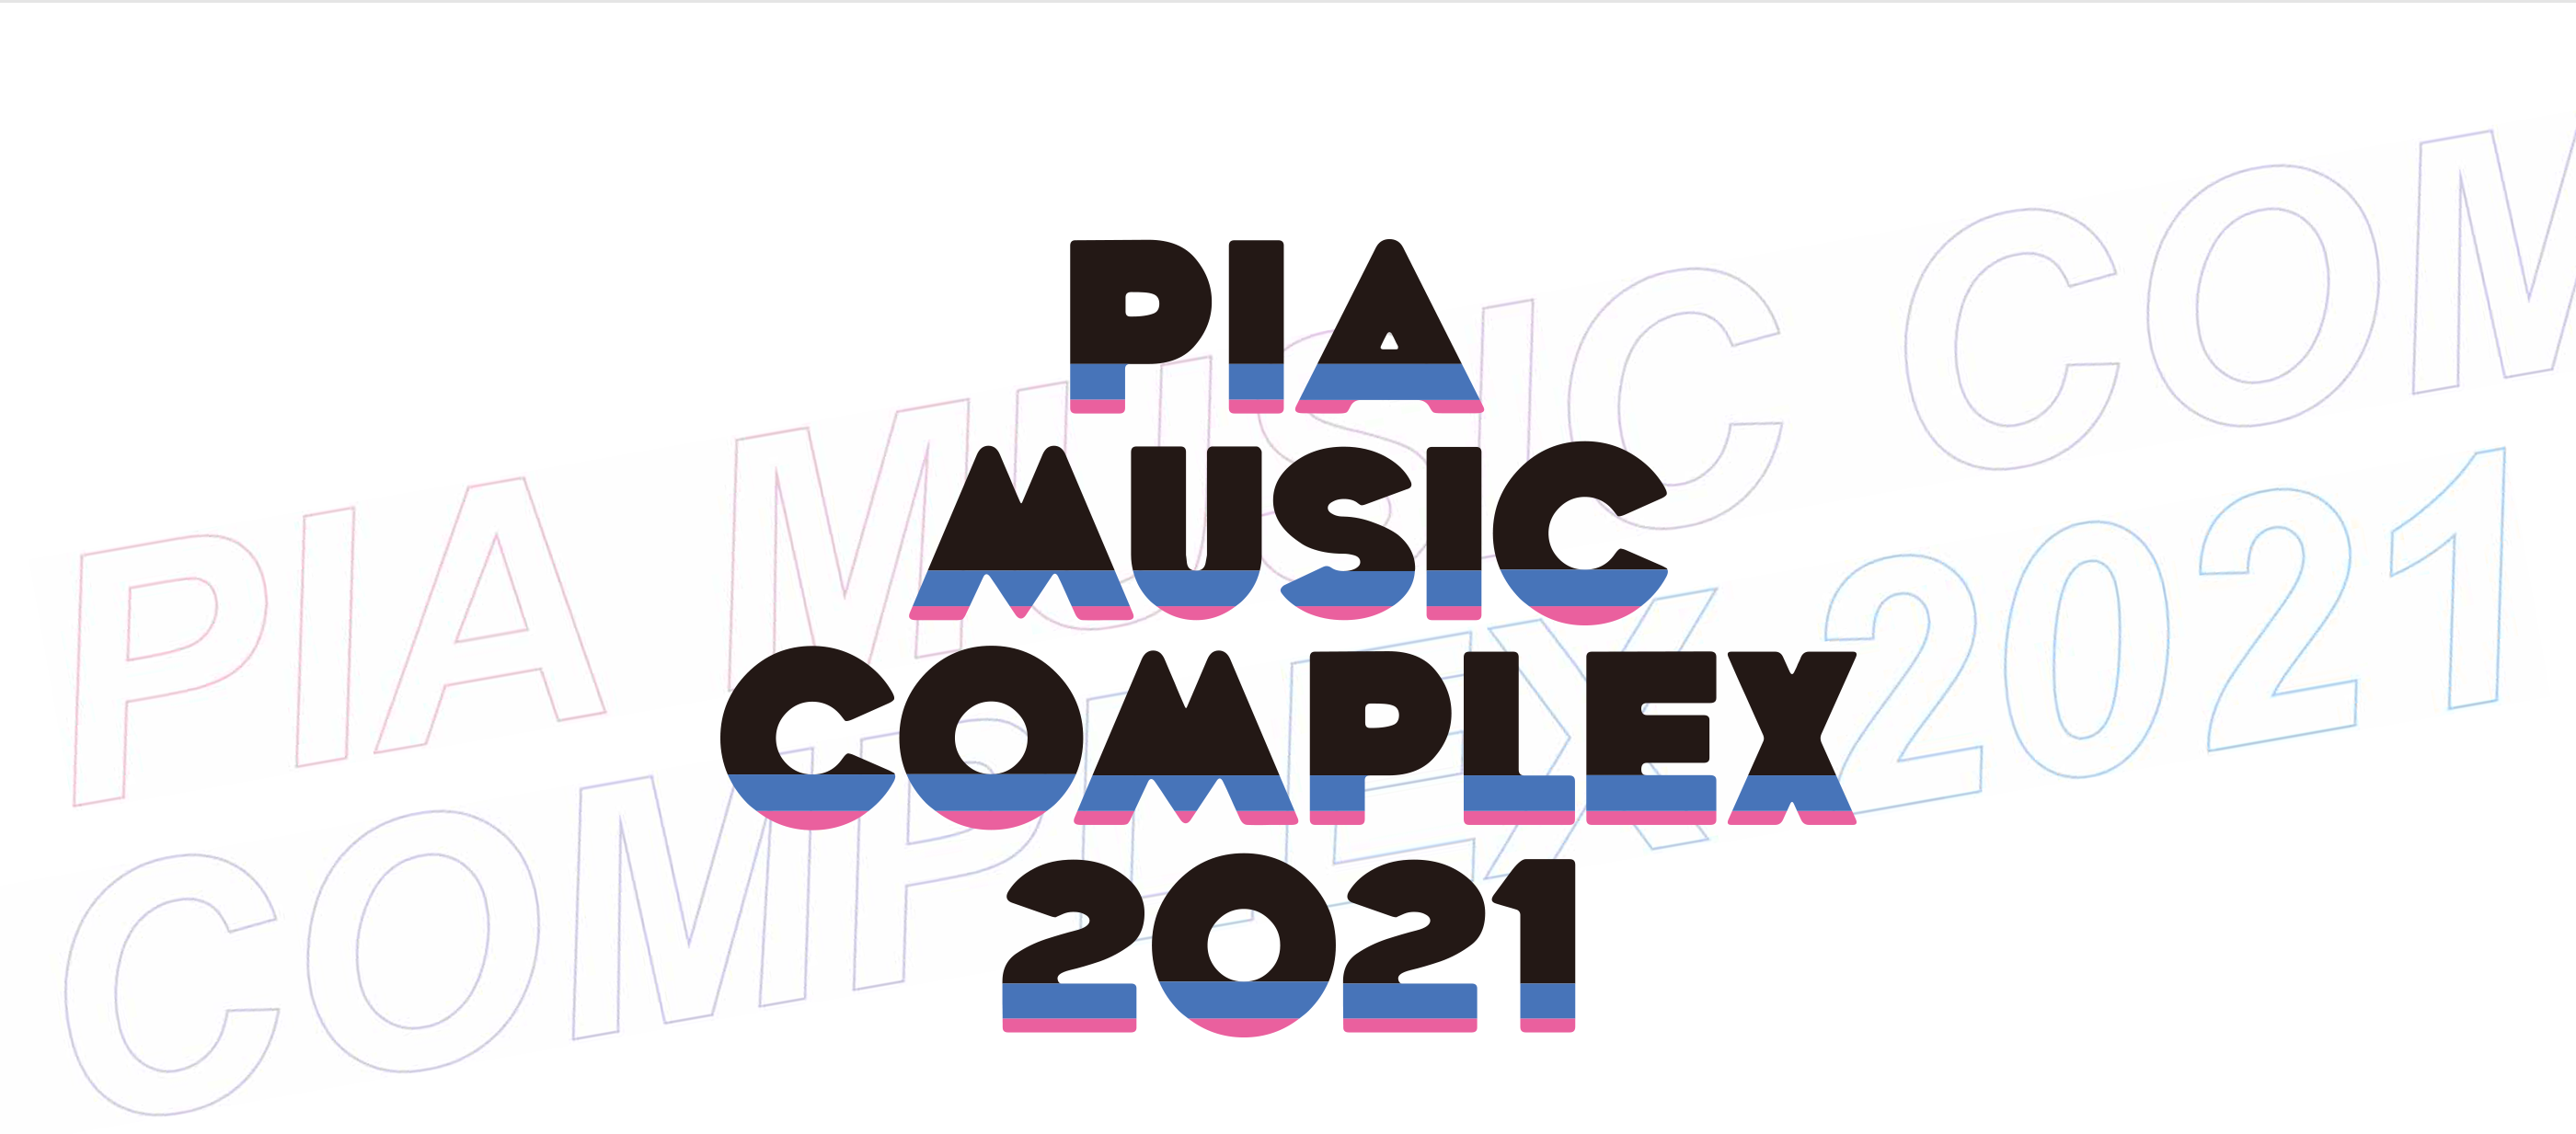 PIA MUSIC COMPLEX 2021